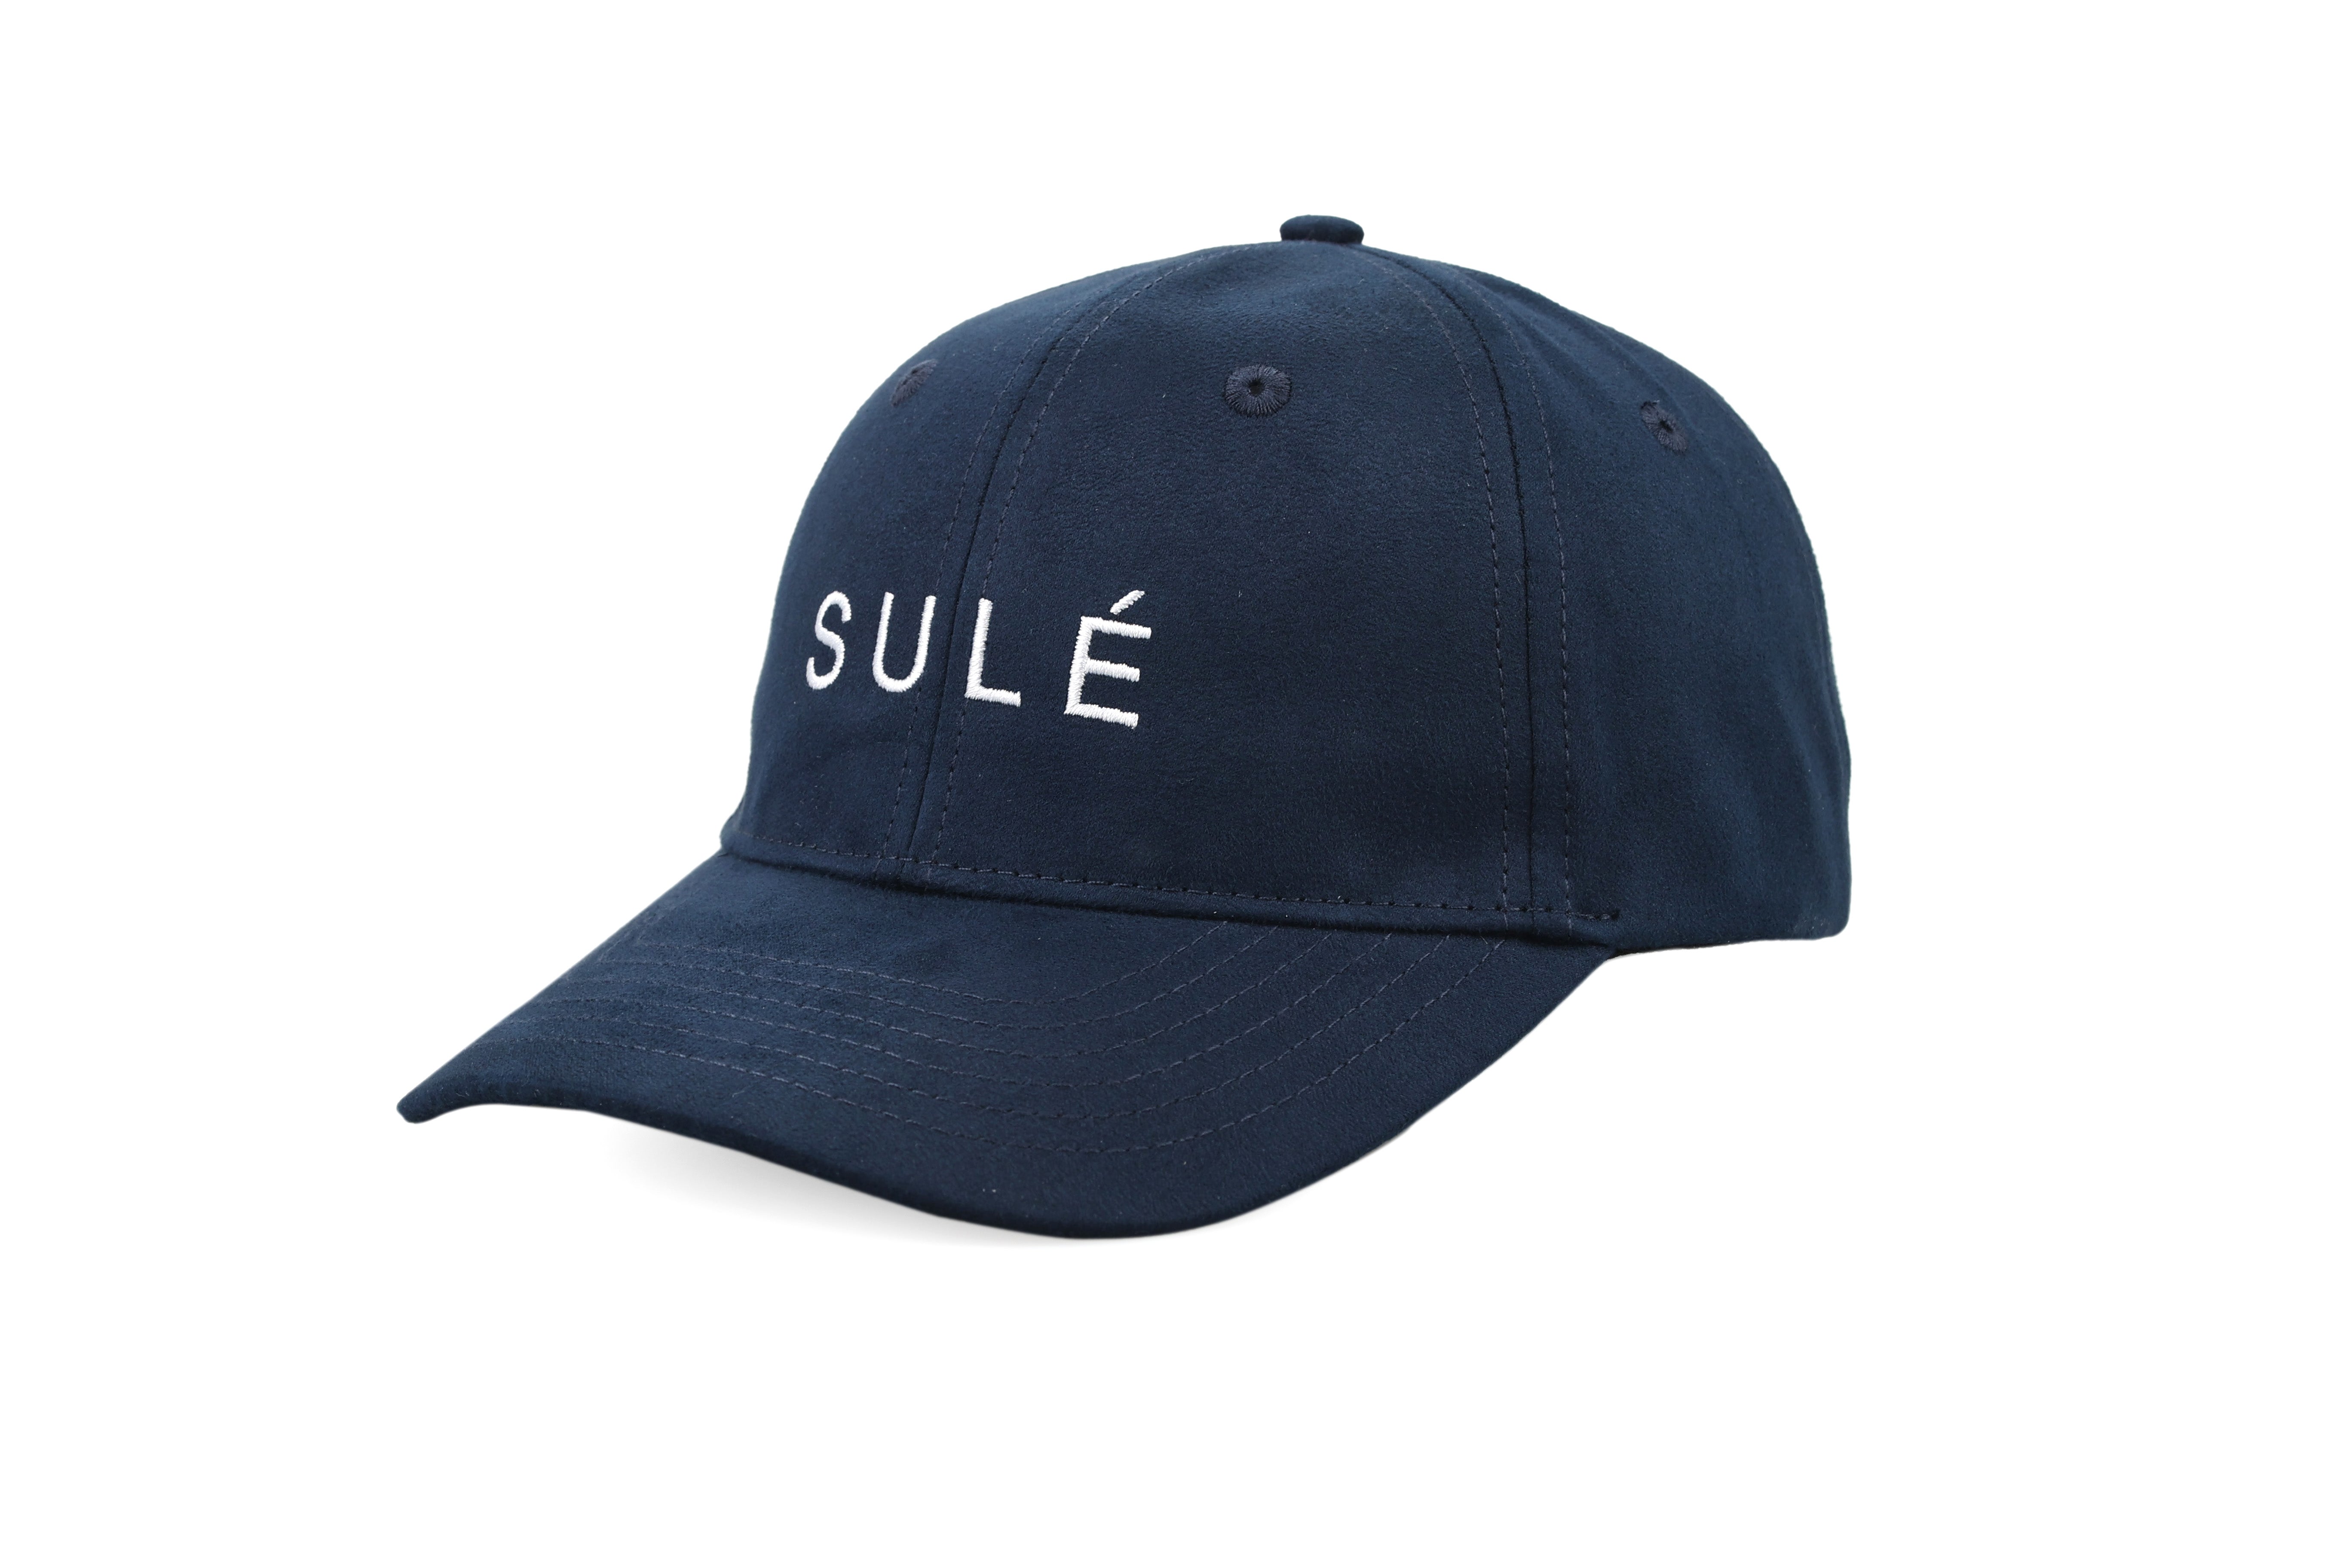 Sule Cap - Navy Blue Suede